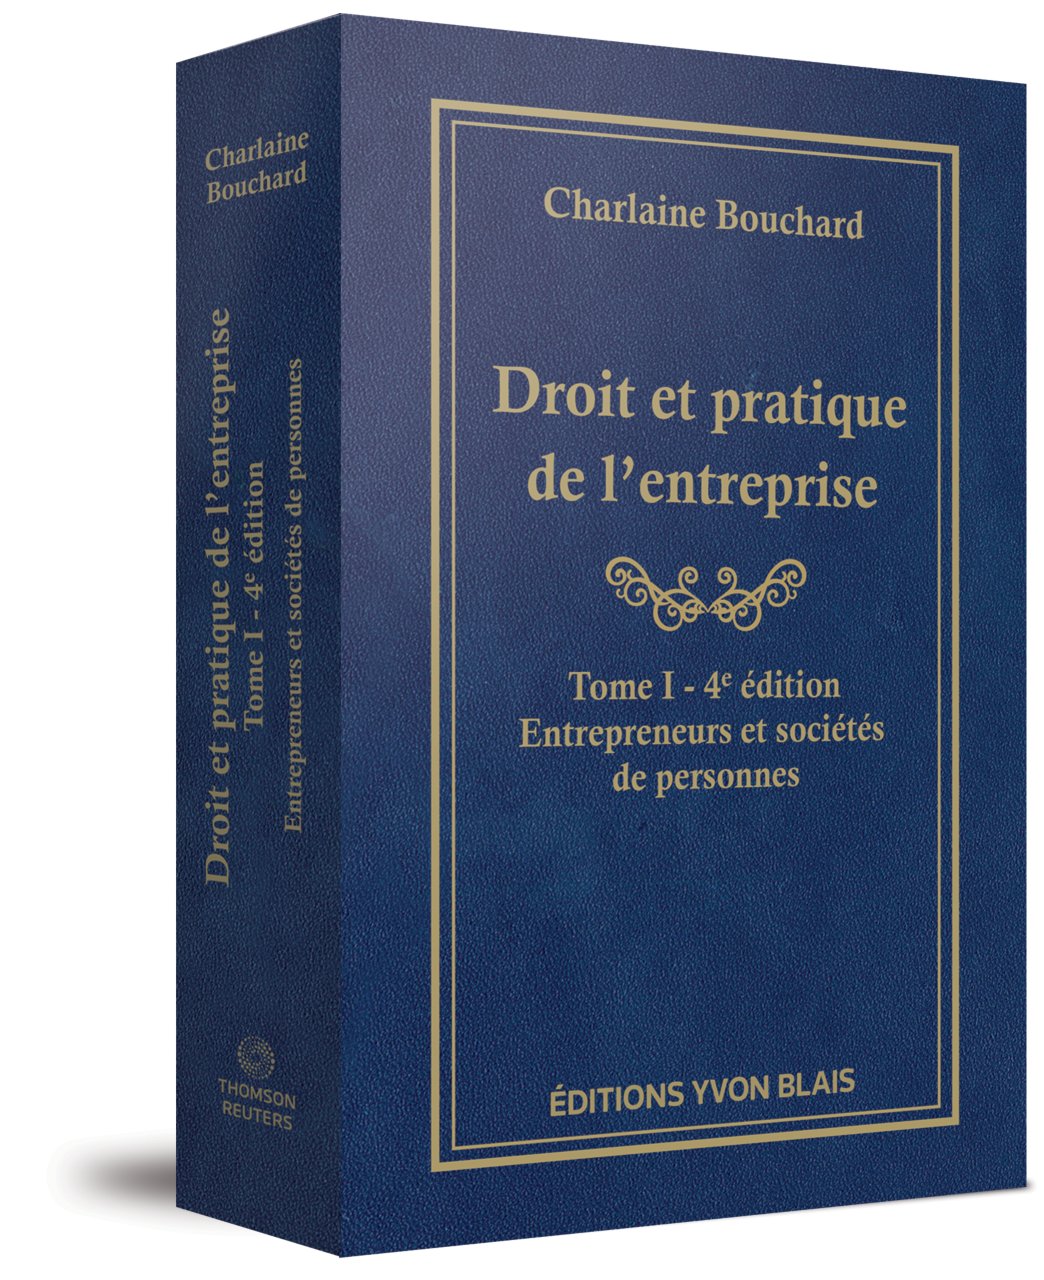 Droit et pratique de l'entreprise Tome I, 4e édition - Entrepreneurs et sociétés de personnes